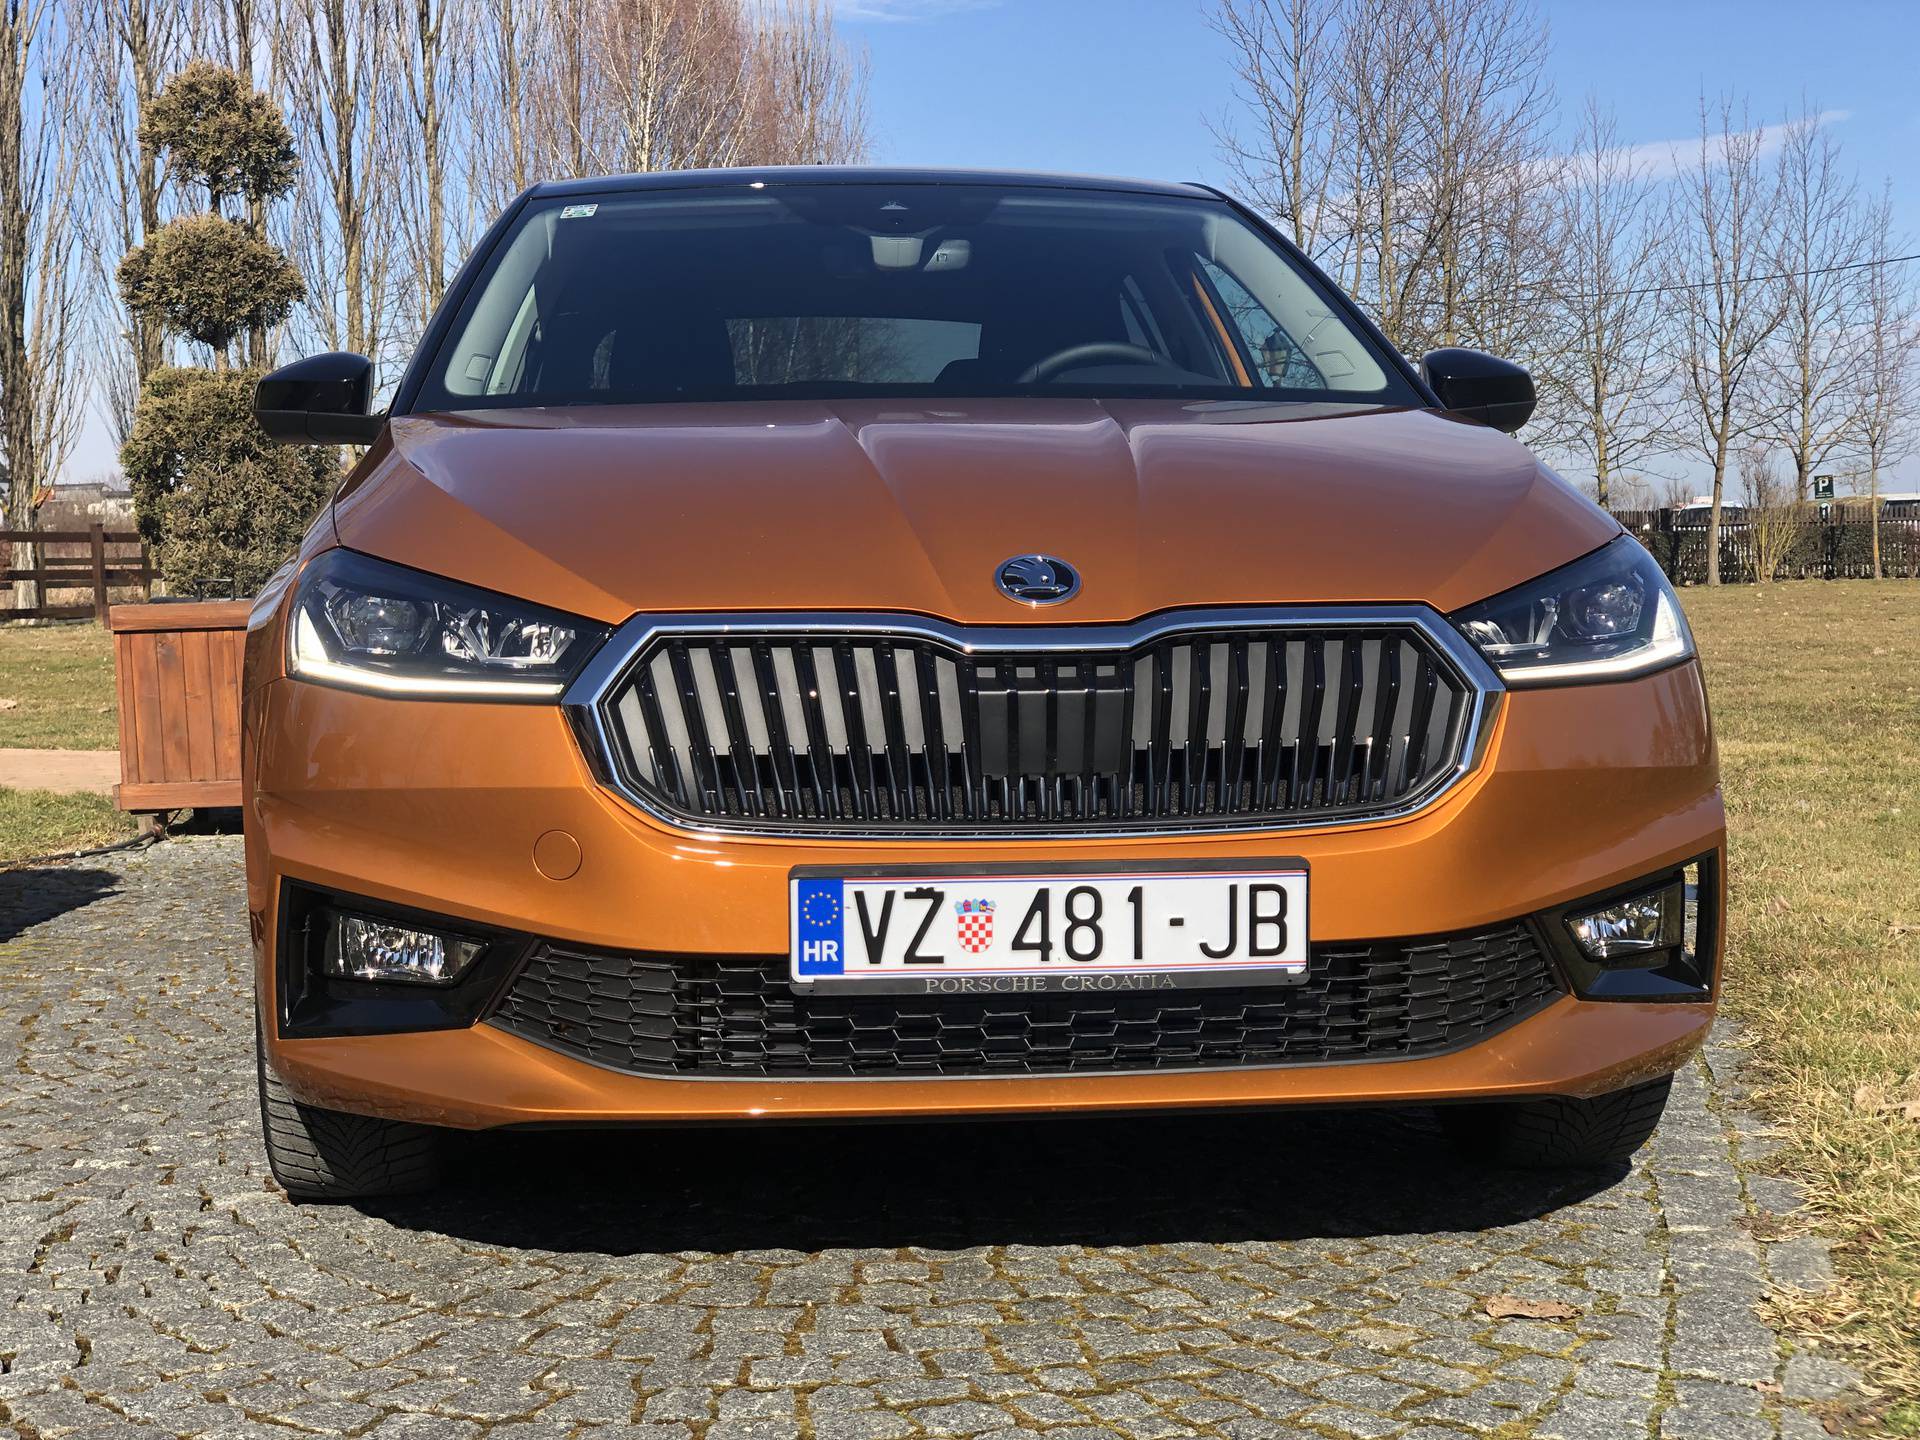 Nova Škoda Fabia stigla je u Hrvatsku: Velik korak naprijed za najprostraniji auto u klasi